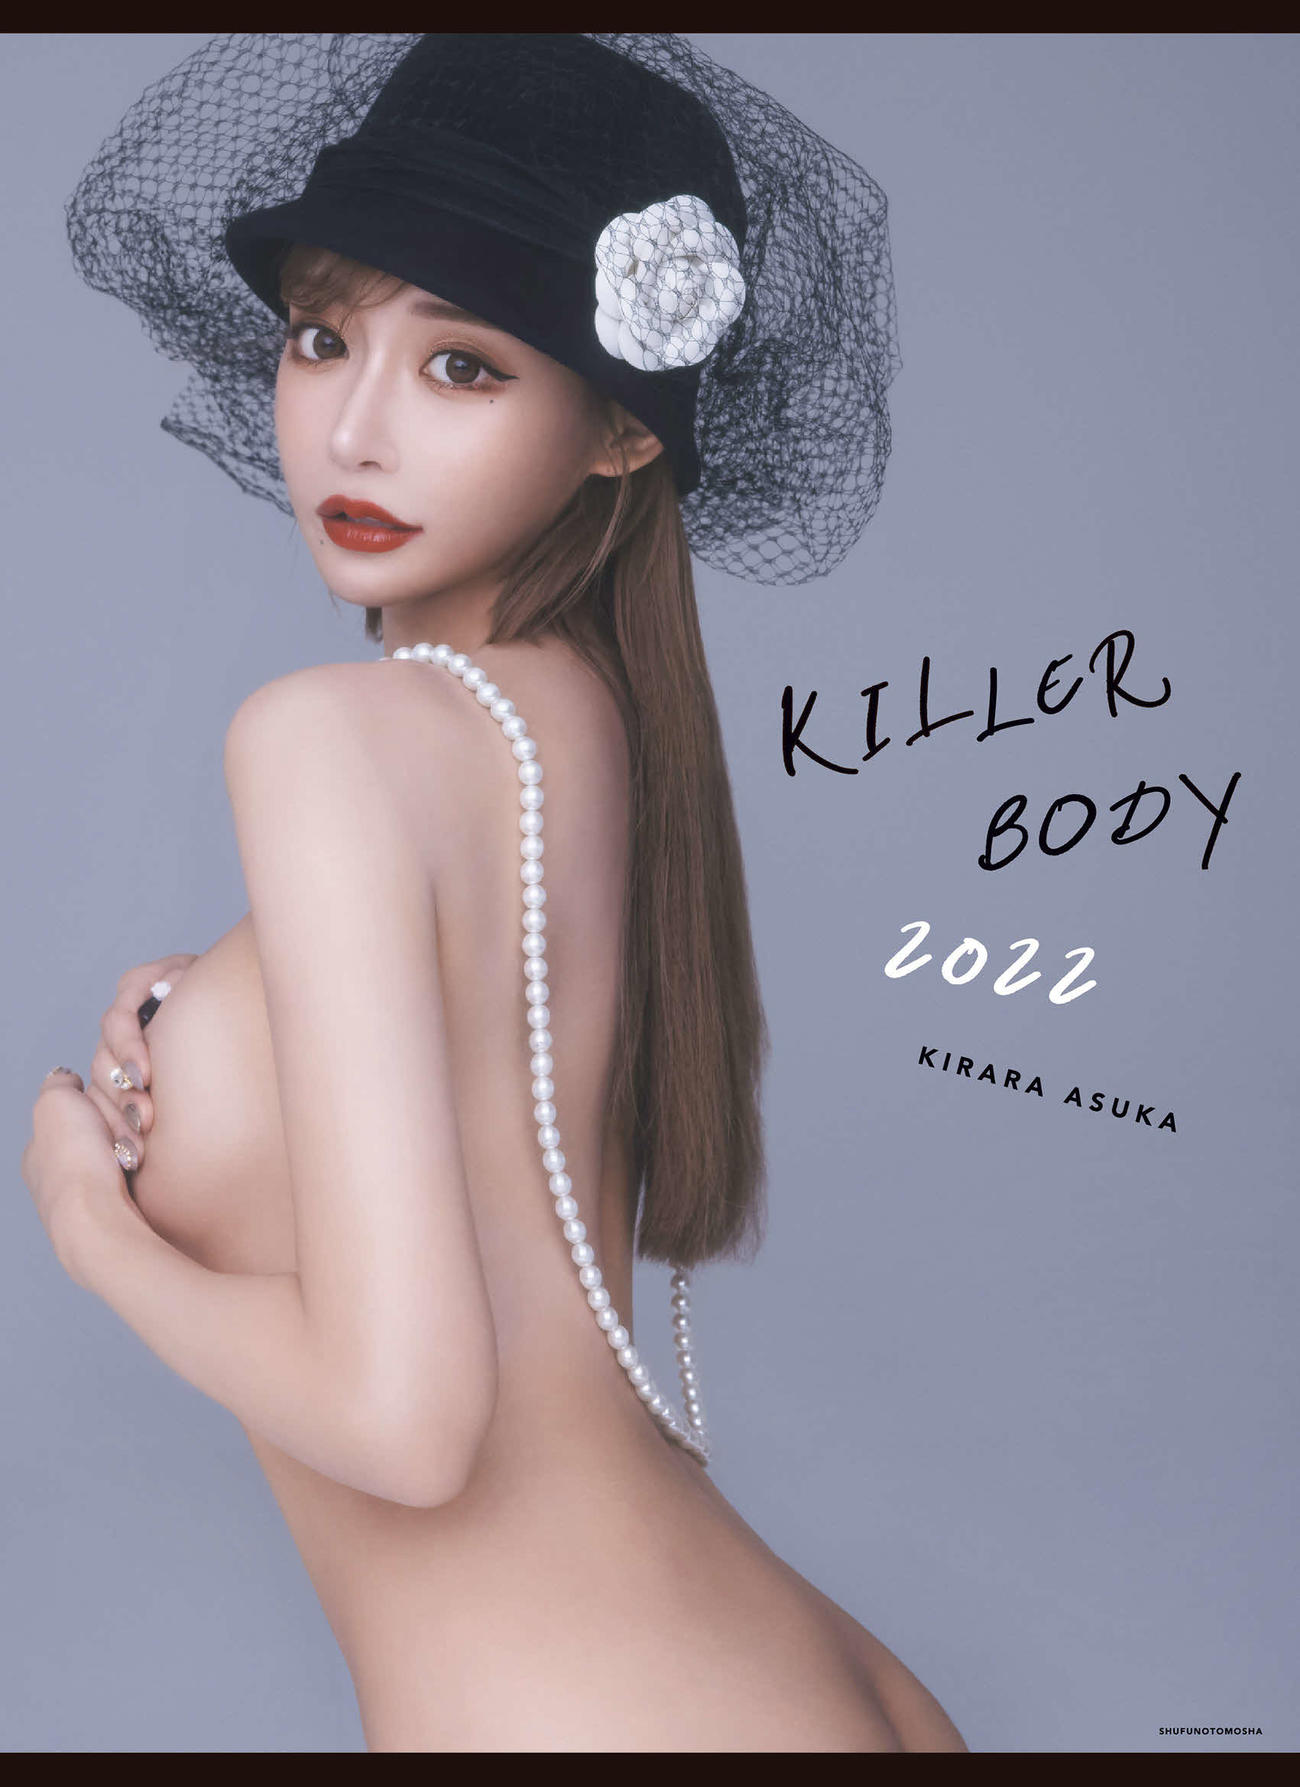 明日花キララ2022年度版カレンダー「KILLER BODY 2022」表紙